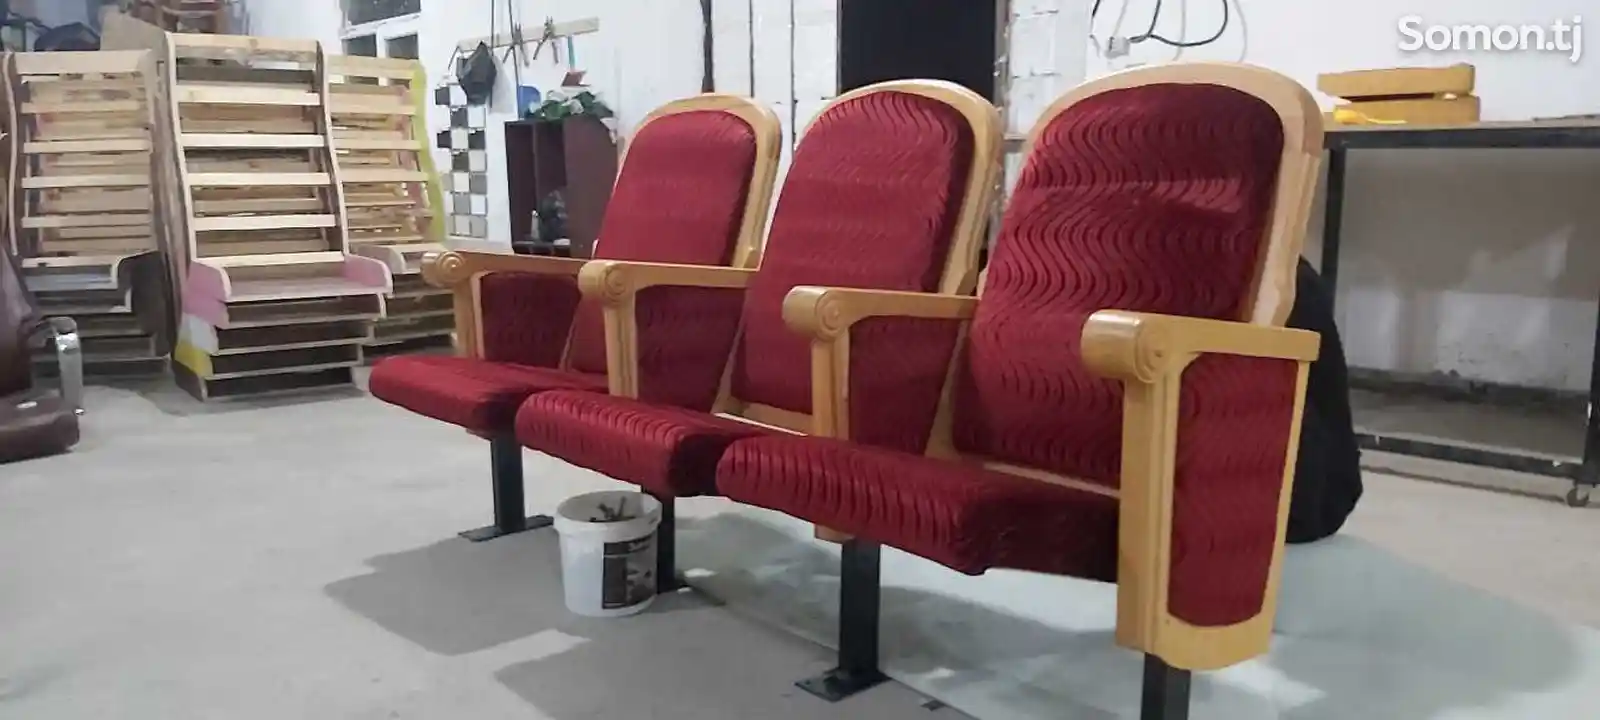 Театральные кресла-5